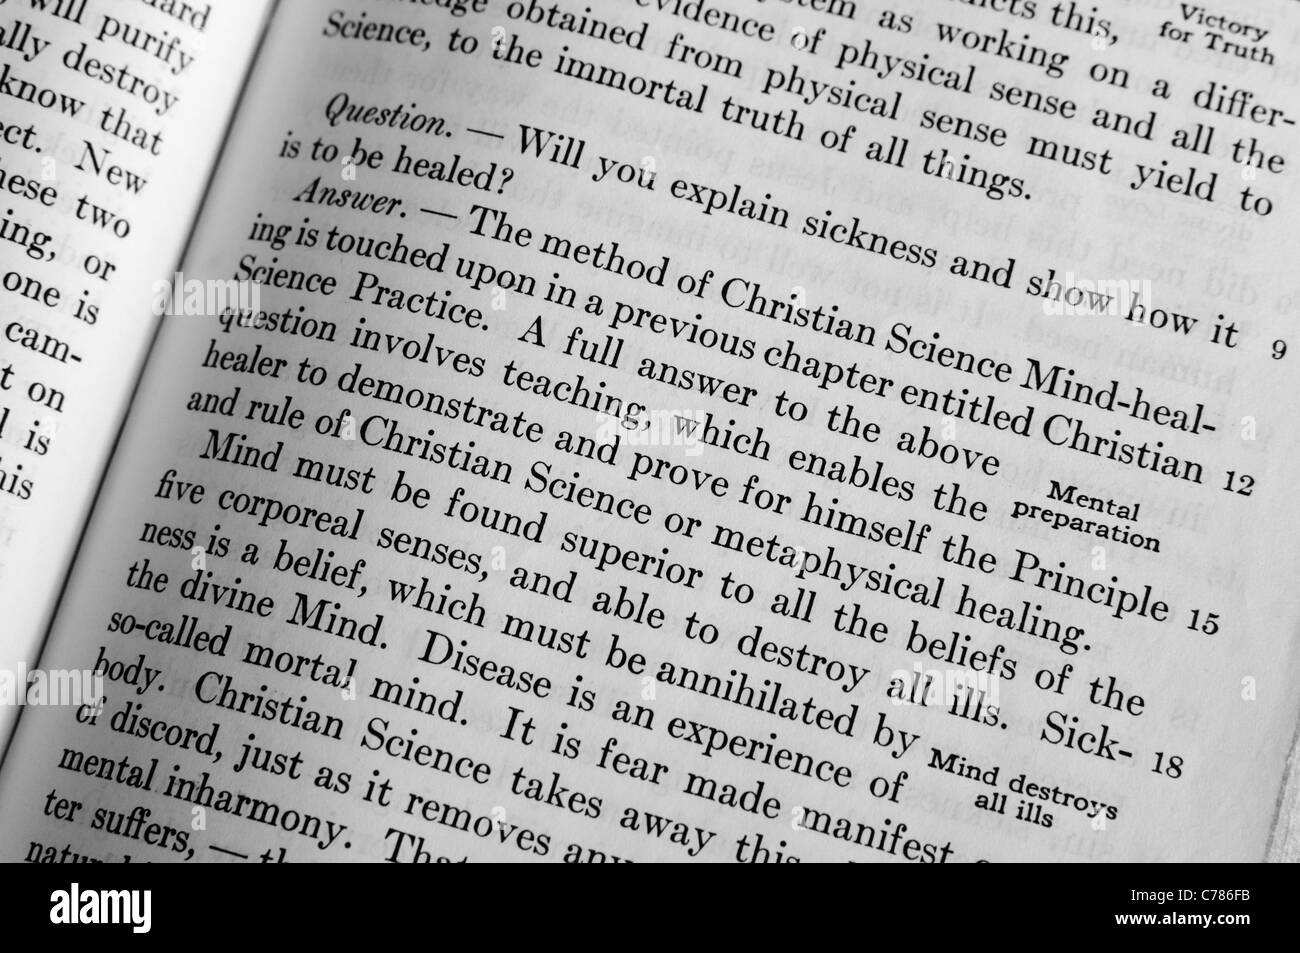 La sección sobre "Enfermedad" en la ciencia cristiana "Ciencia y Salud" de Mary Baker Eddy Foto de stock